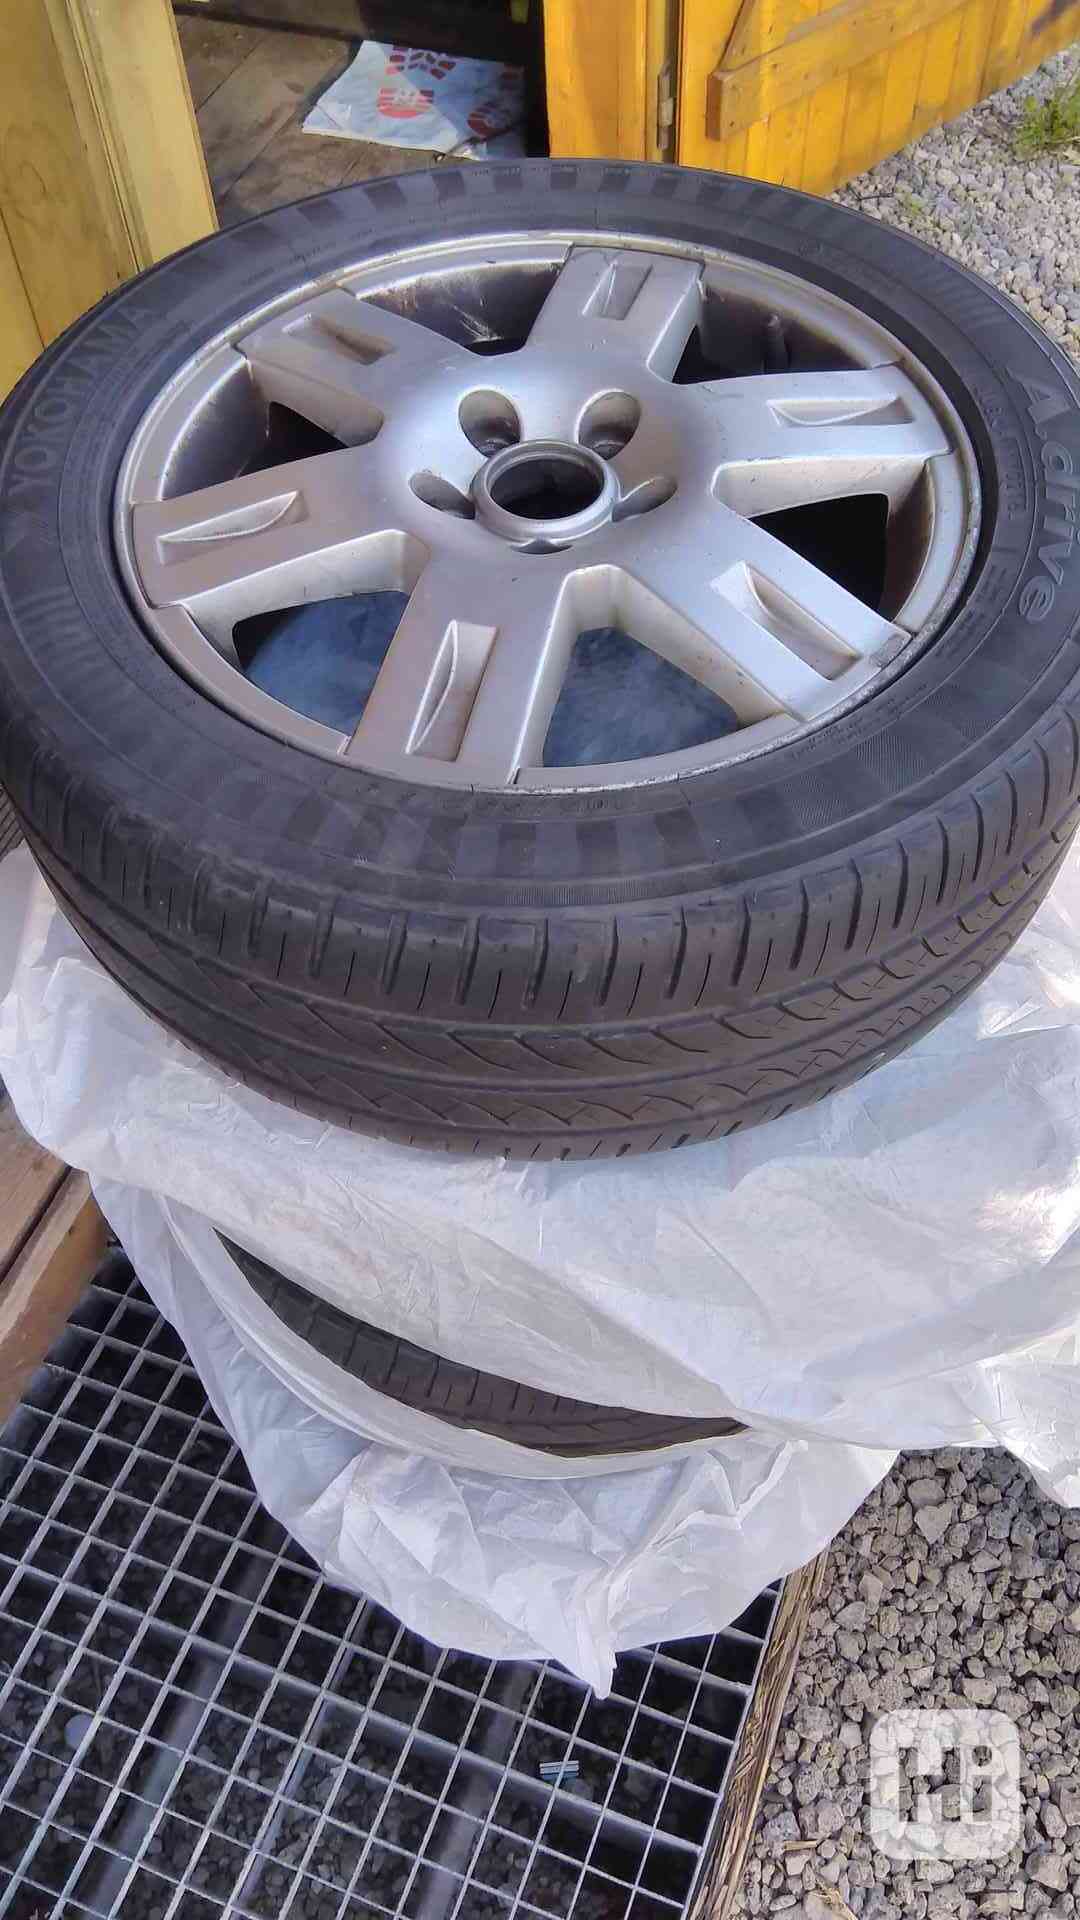 ALU kola Ford Mondeo 16" RONAL s pneu 205/55R16 - foto 1